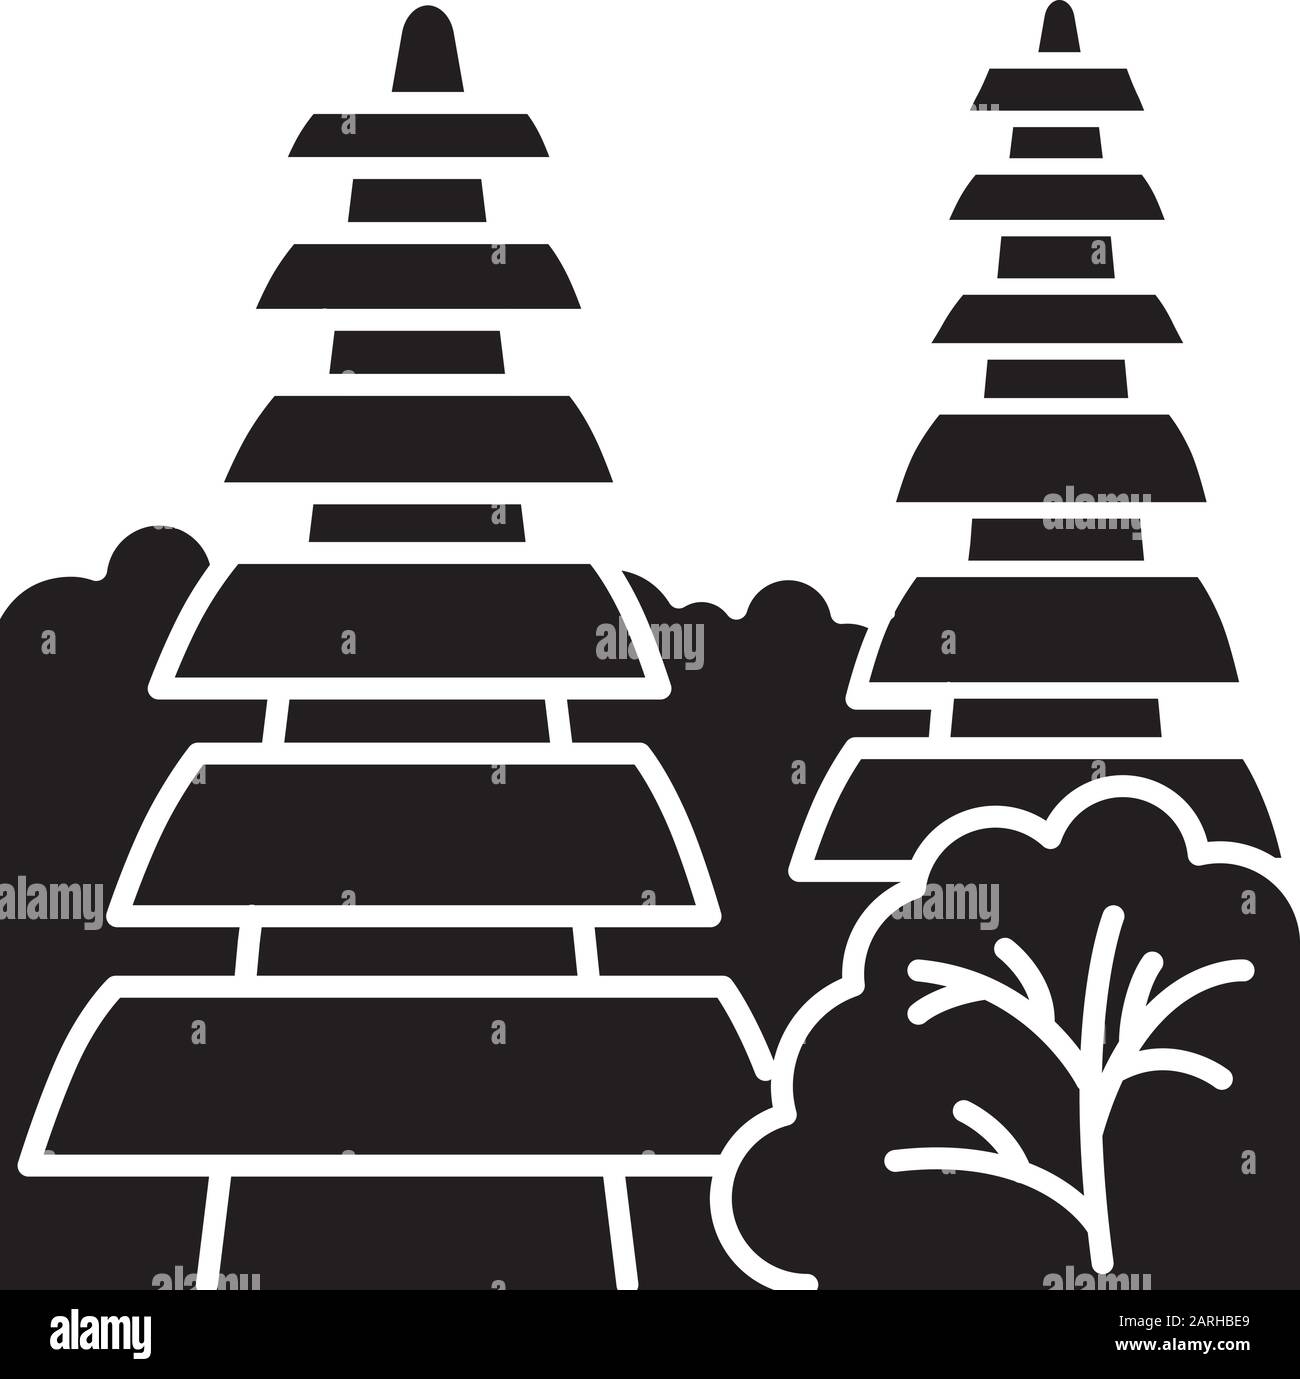 Pura tanah Lot temple dans l'icône glyphe de Bali. Destinations touristiques indonésiennes et lieux religieux. Temple hindouiste avec toit en herbe. Symbole silhouette. Illustration de Vecteur